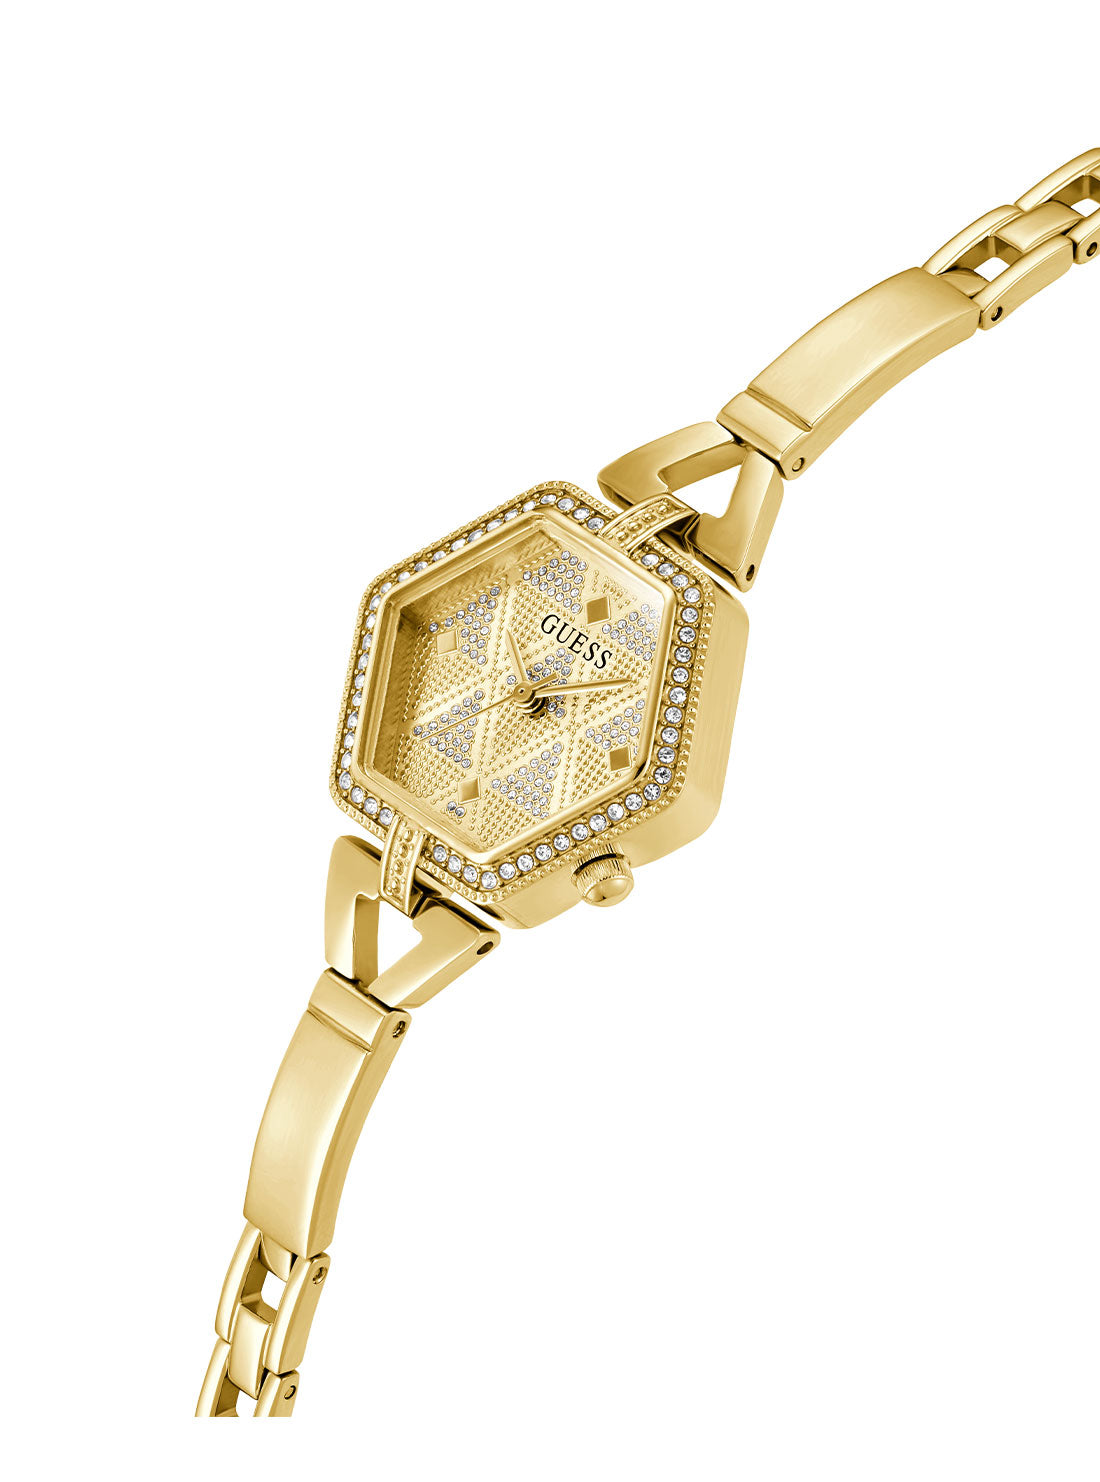 Gold Audrey Glitz Hexagonal Link Watch | GUESS Women's Watches | detail view